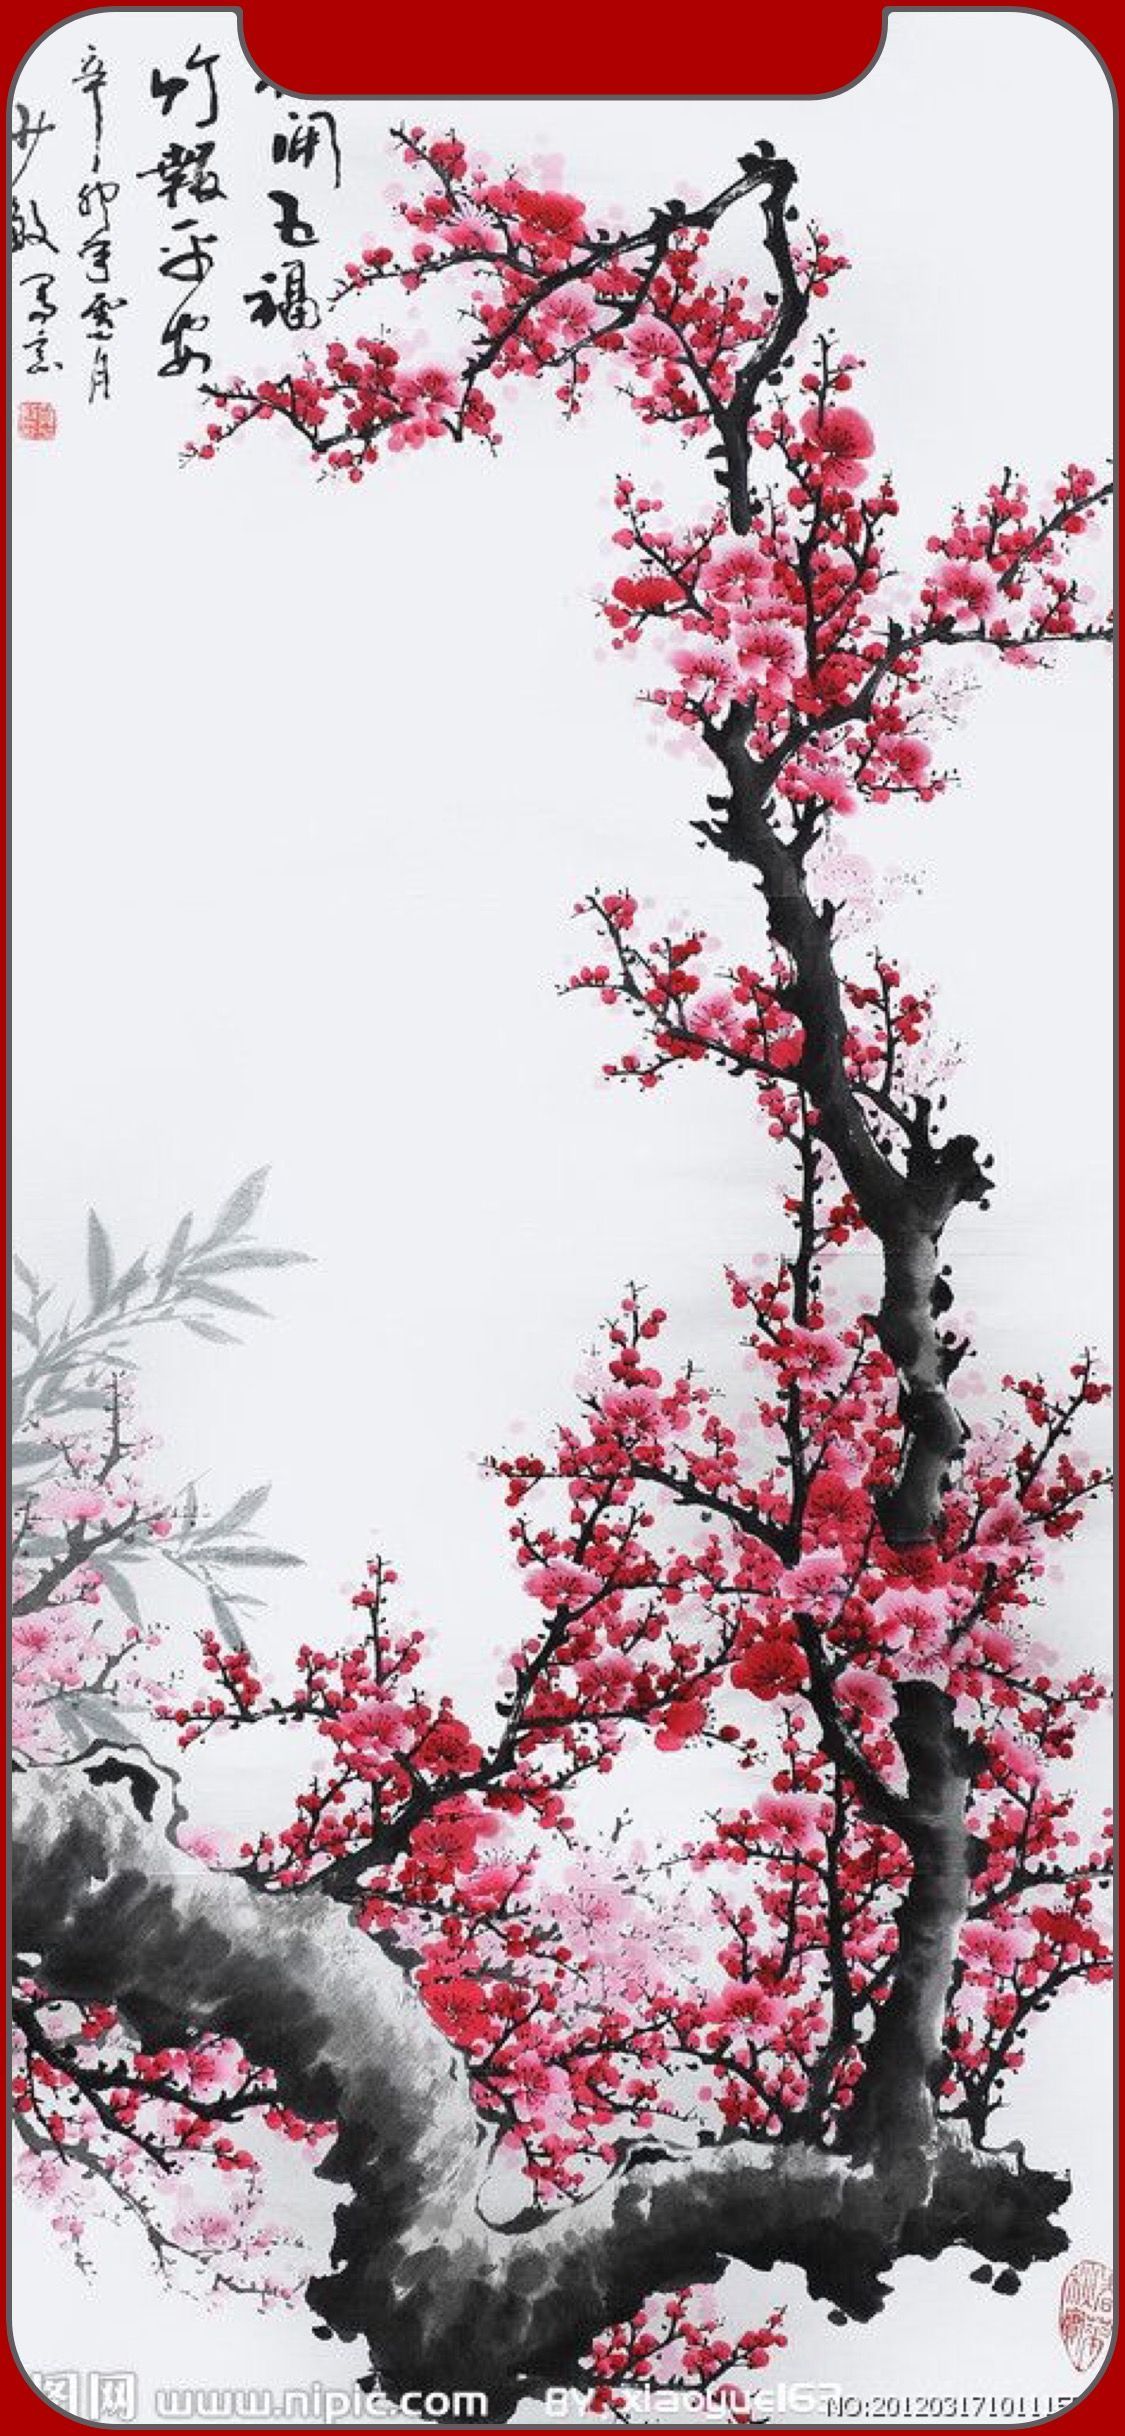 iPhone Japan Art Wallpapers - Wallpaper ...